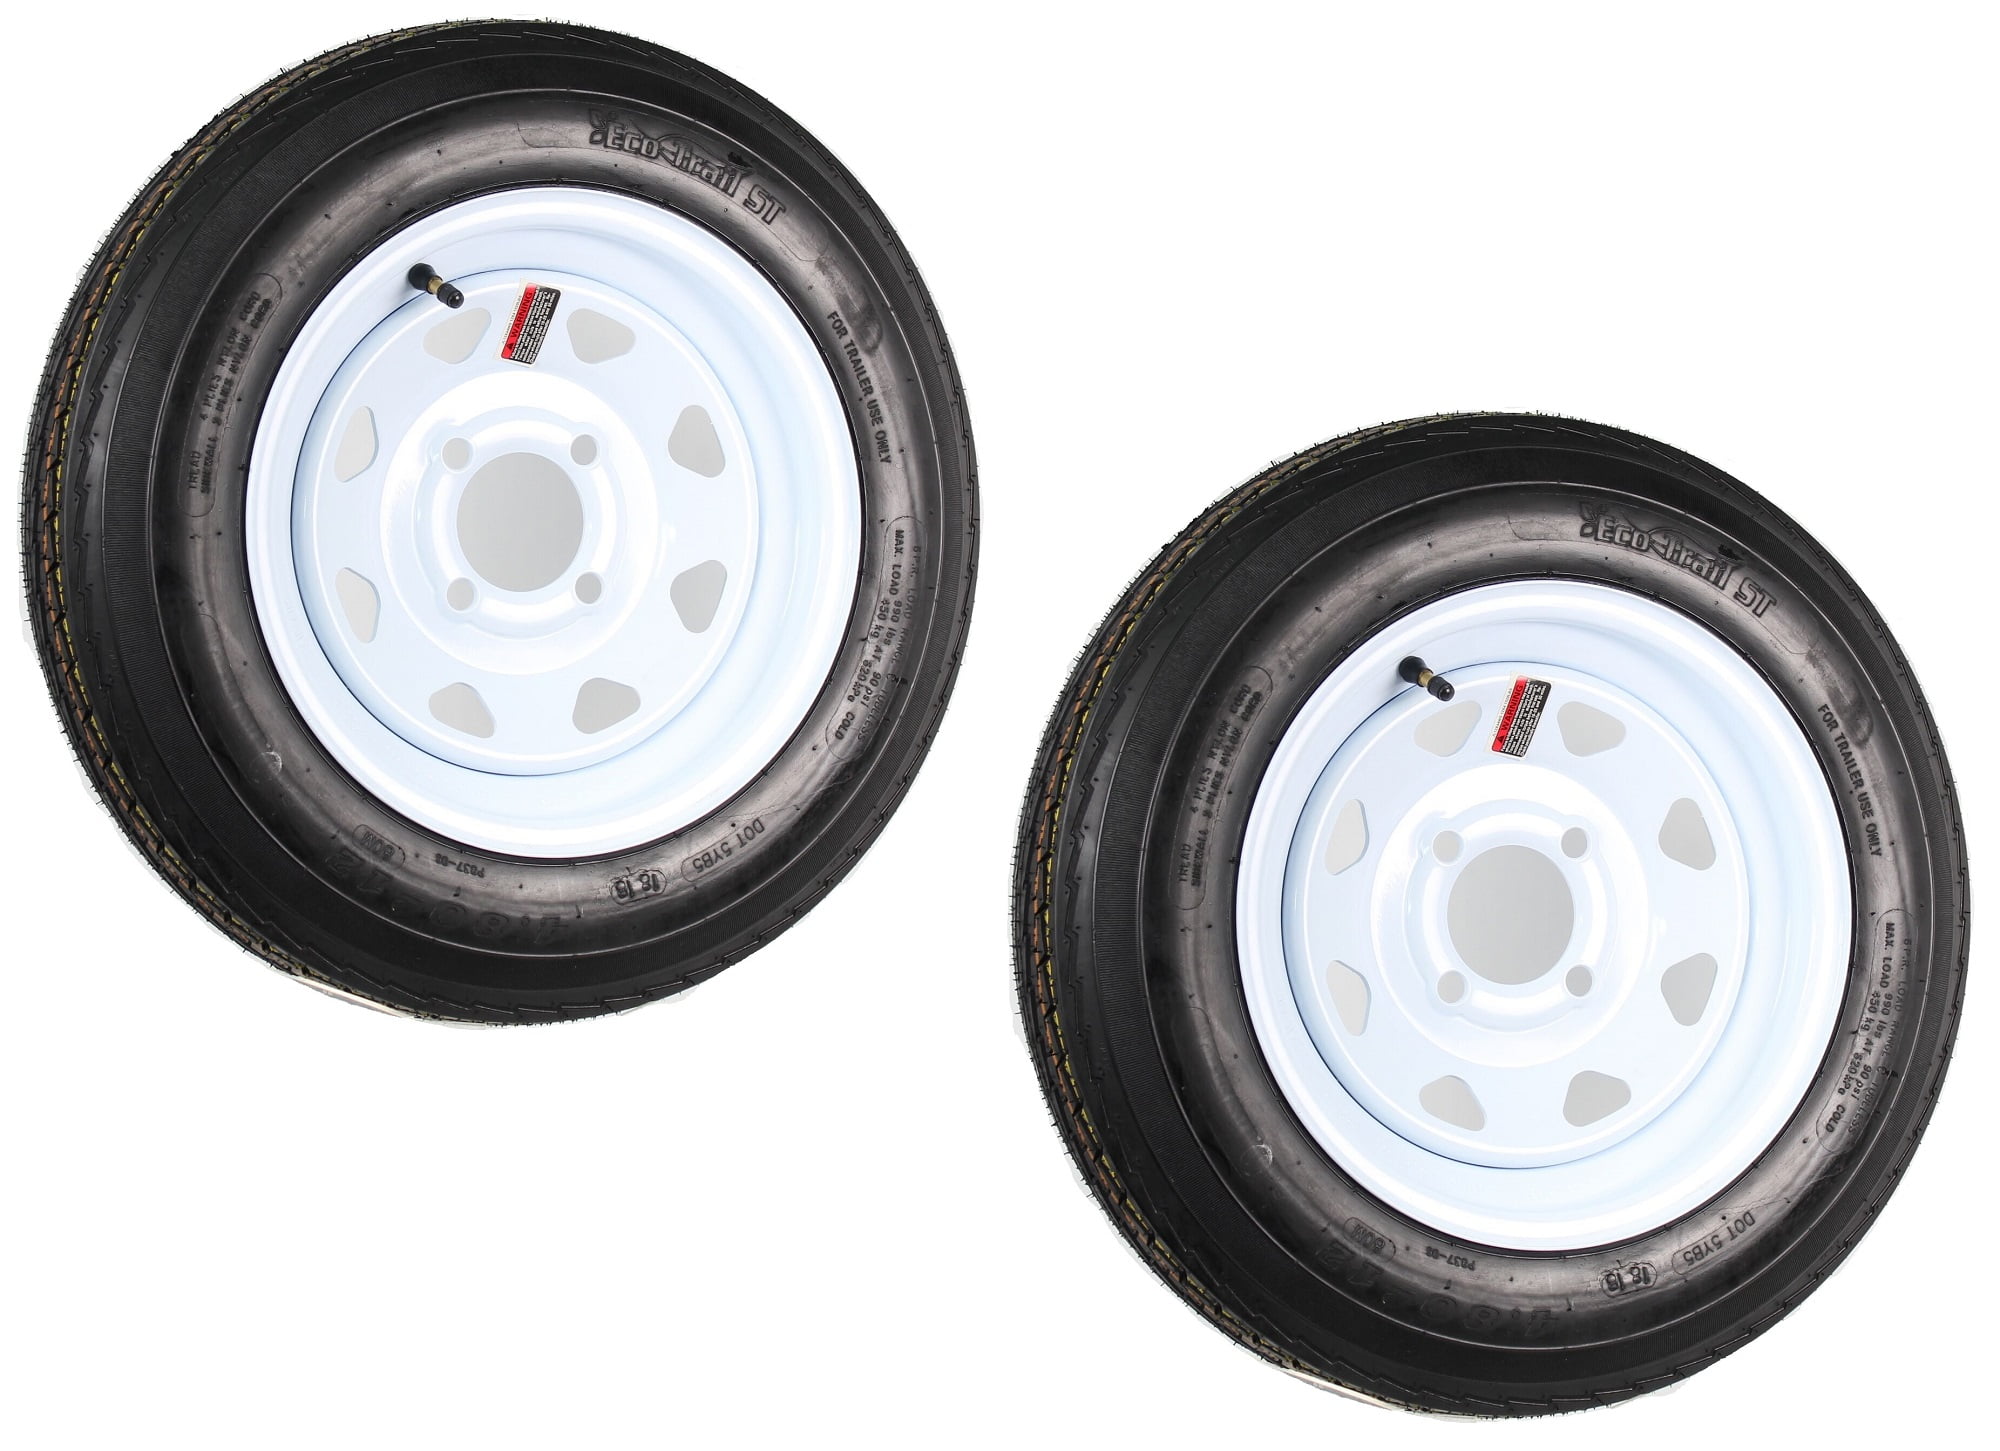 Autoforever 2pc Trailer Tires & Rims 4.80-12 480-12 4.80 X 12 5 Lug Wheel White Spoke 4 Ply